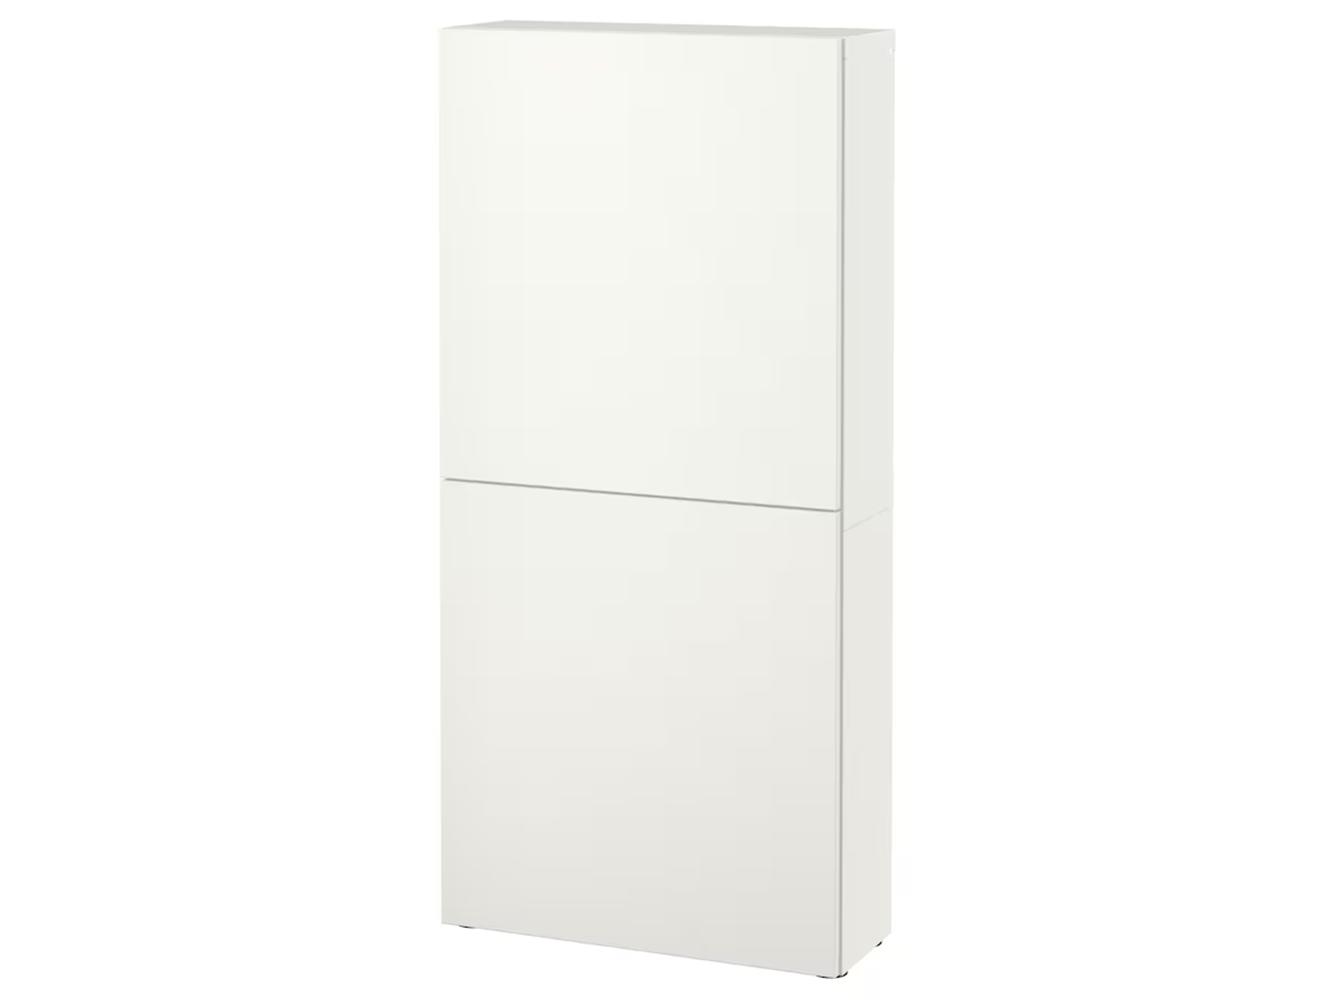 Беста 513 white ИКЕА (IKEA) изображение товара